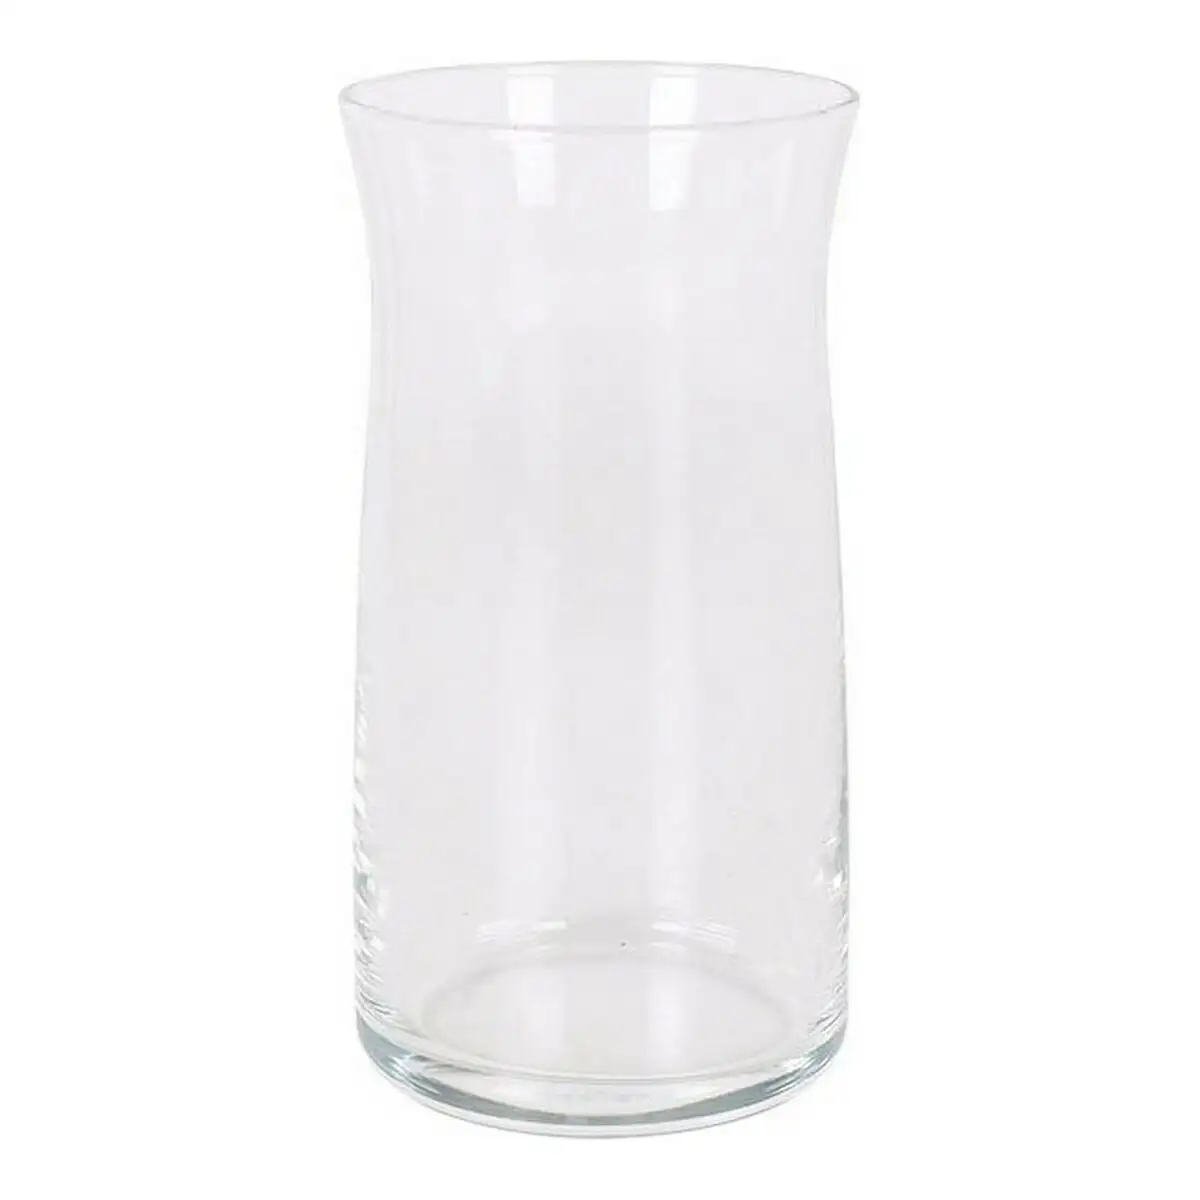 Set de verres lav vera verre transparent 370 cc 6 pcs _4390. DIAYTAR SENEGAL - Votre Portail Vers l'Exclusivité. Explorez notre boutique en ligne pour trouver des produits uniques et exclusifs, conçus pour les amateurs de qualité.